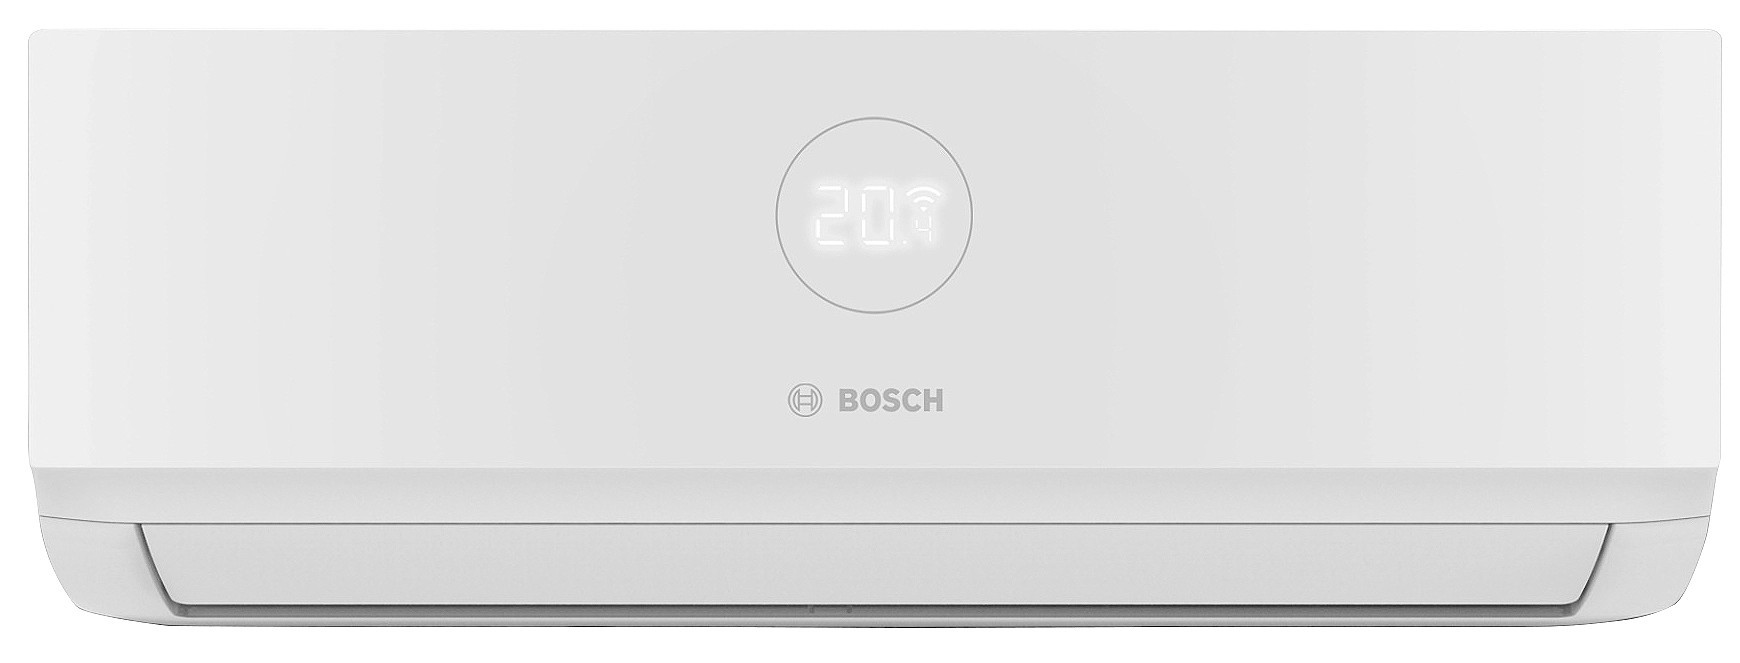 Внутренний блок мультисплит-системы Bosch CL5000i W 35E, 3,5 кВт в интернет-магазине, главное фото